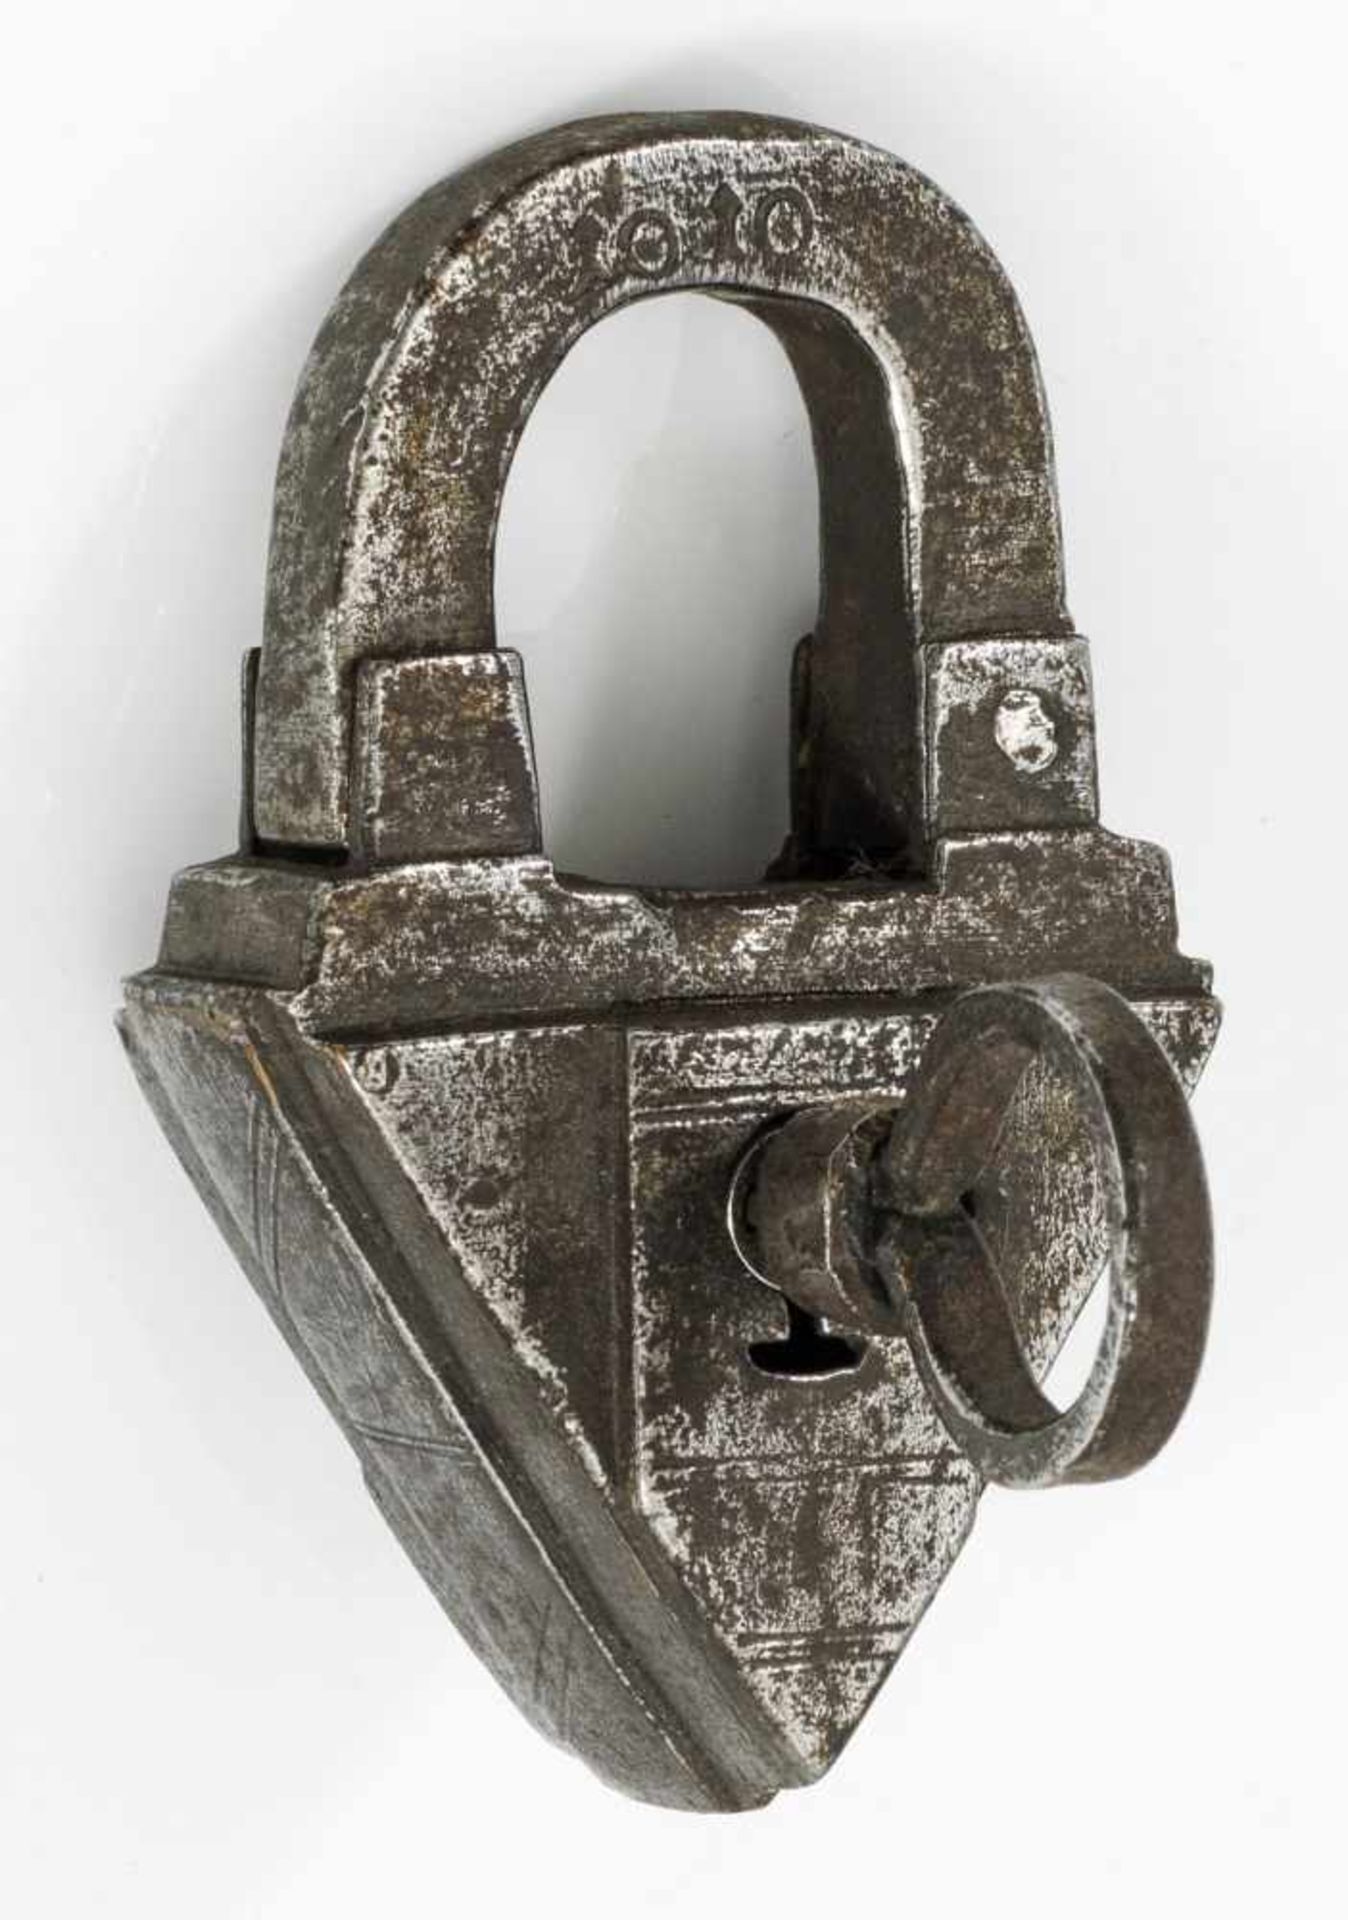 Vorhängeschlossmit Schlüssel. Eisen. Dreieckig, vorder- und rückseitig verstärkt durch breite